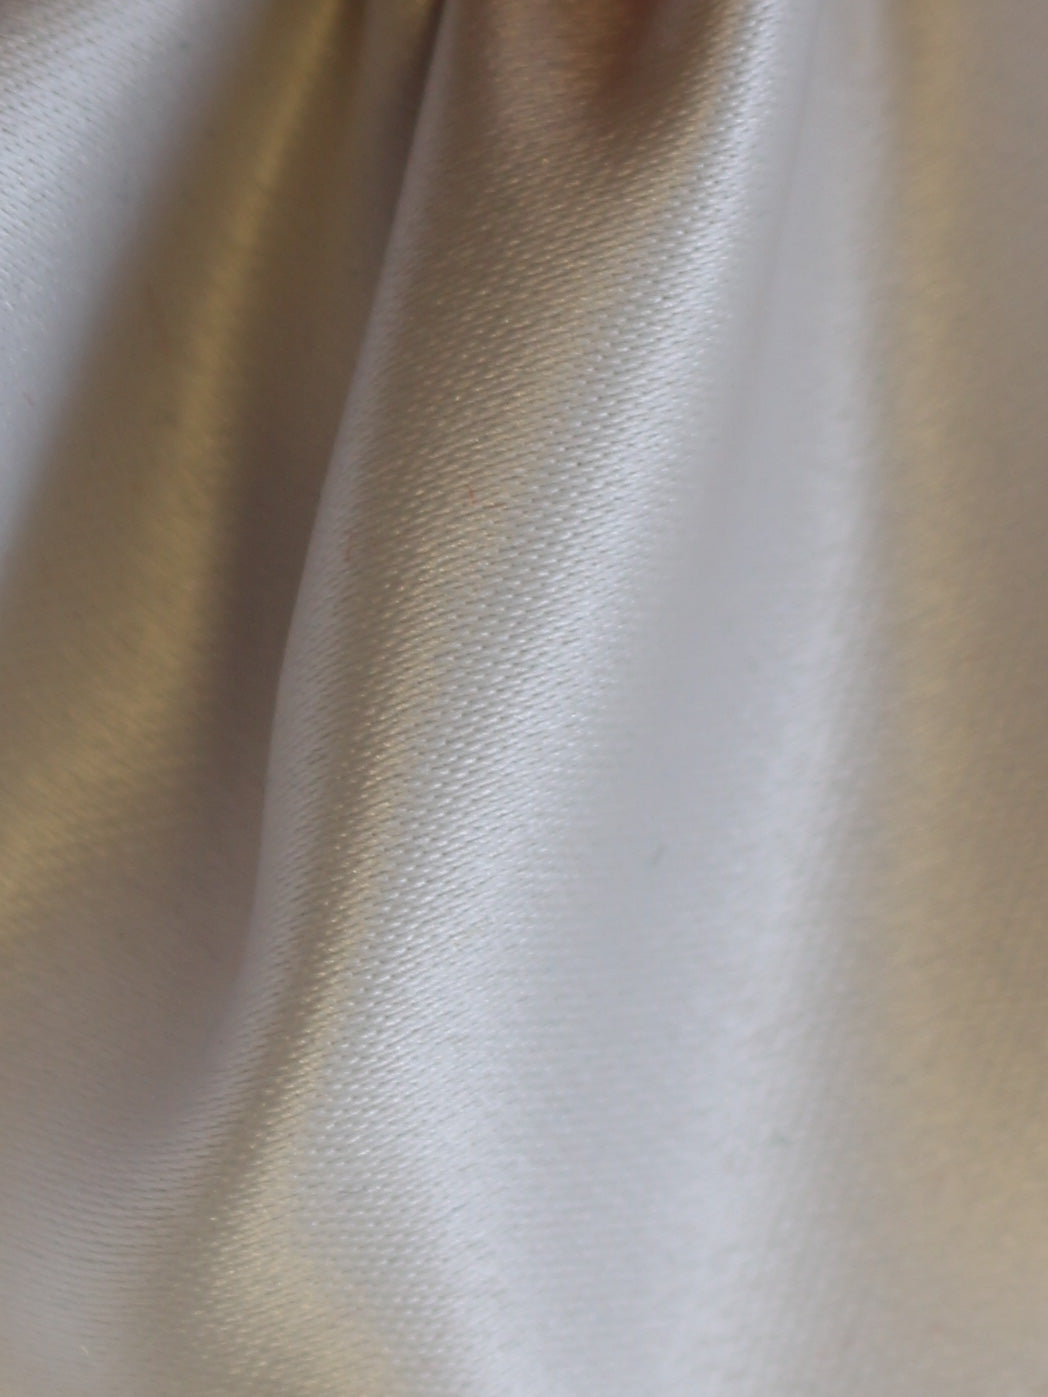 Satin duchesse en polyester (148cm/58") - Contessa (nuances plus claires)